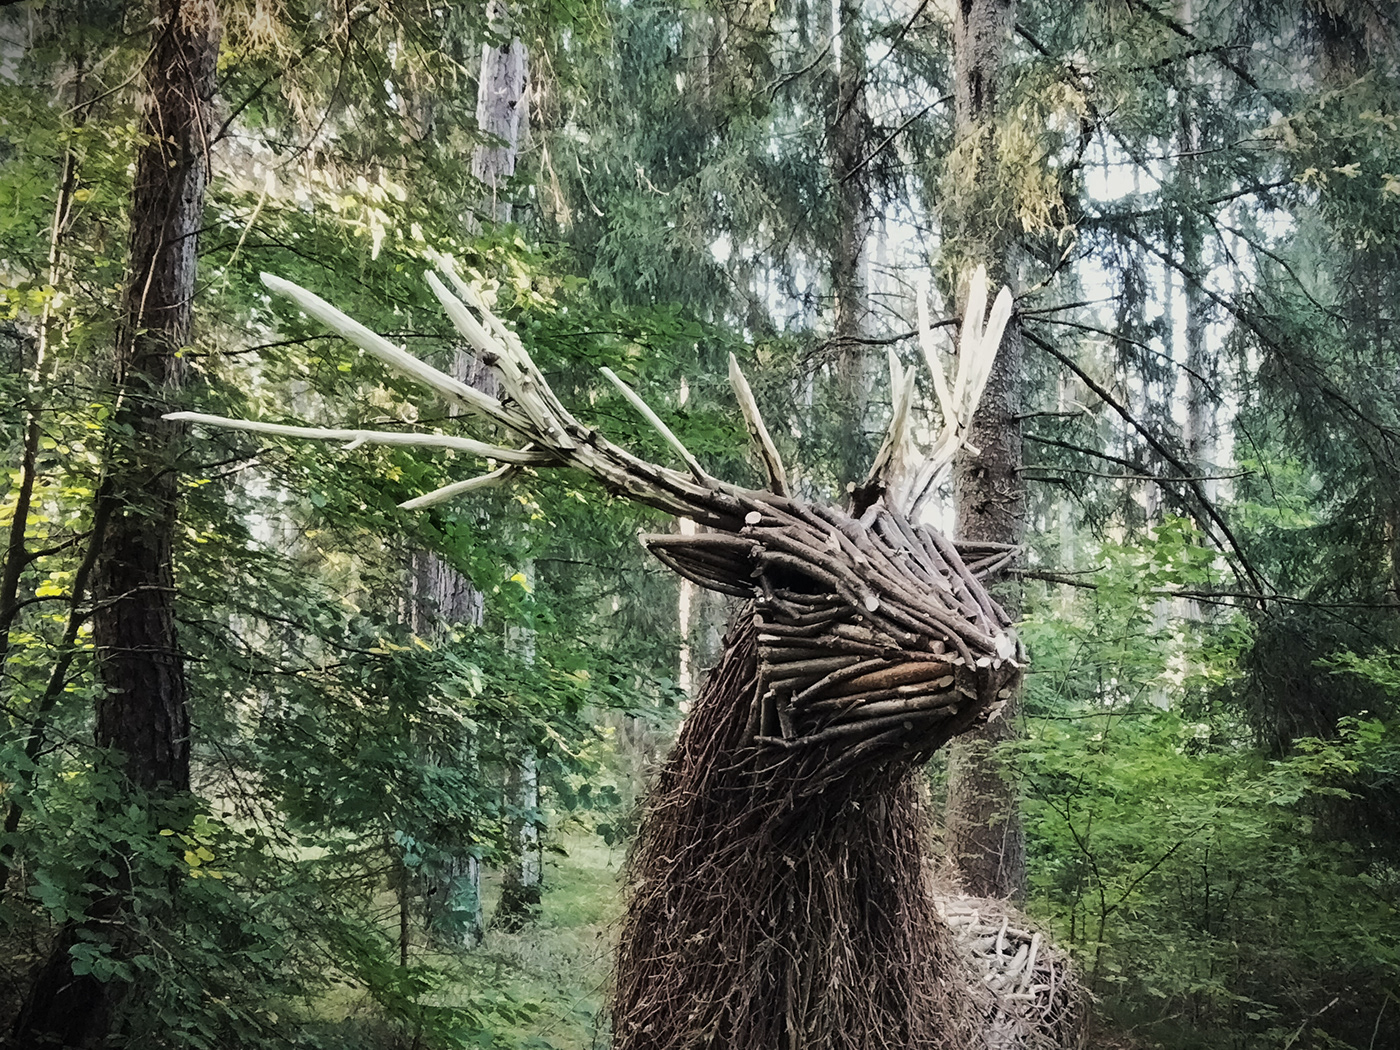 landart sculpture installation wood Nature mountains deer animal environment Landscape